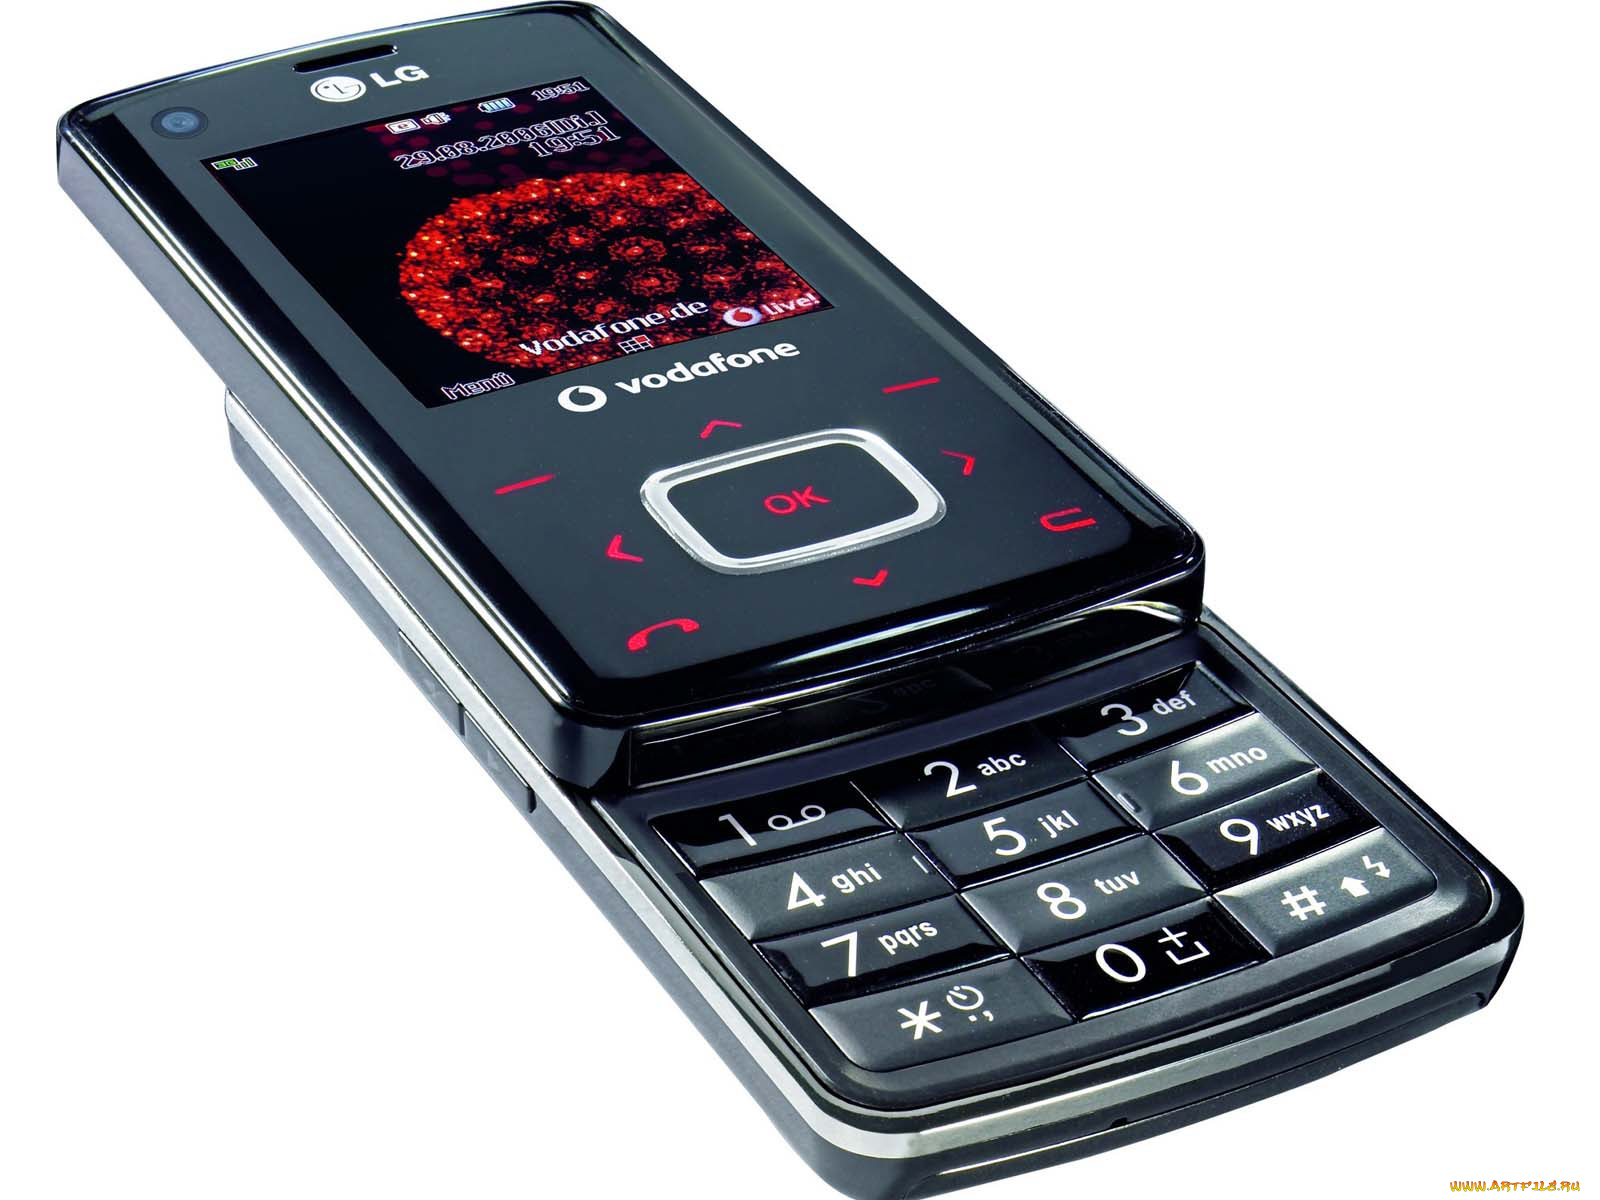 Кнопочные телефоны слайдеры. LG ku800. LG 5500 слайдер. LG слайдер 2006. LG слайдер 2005.